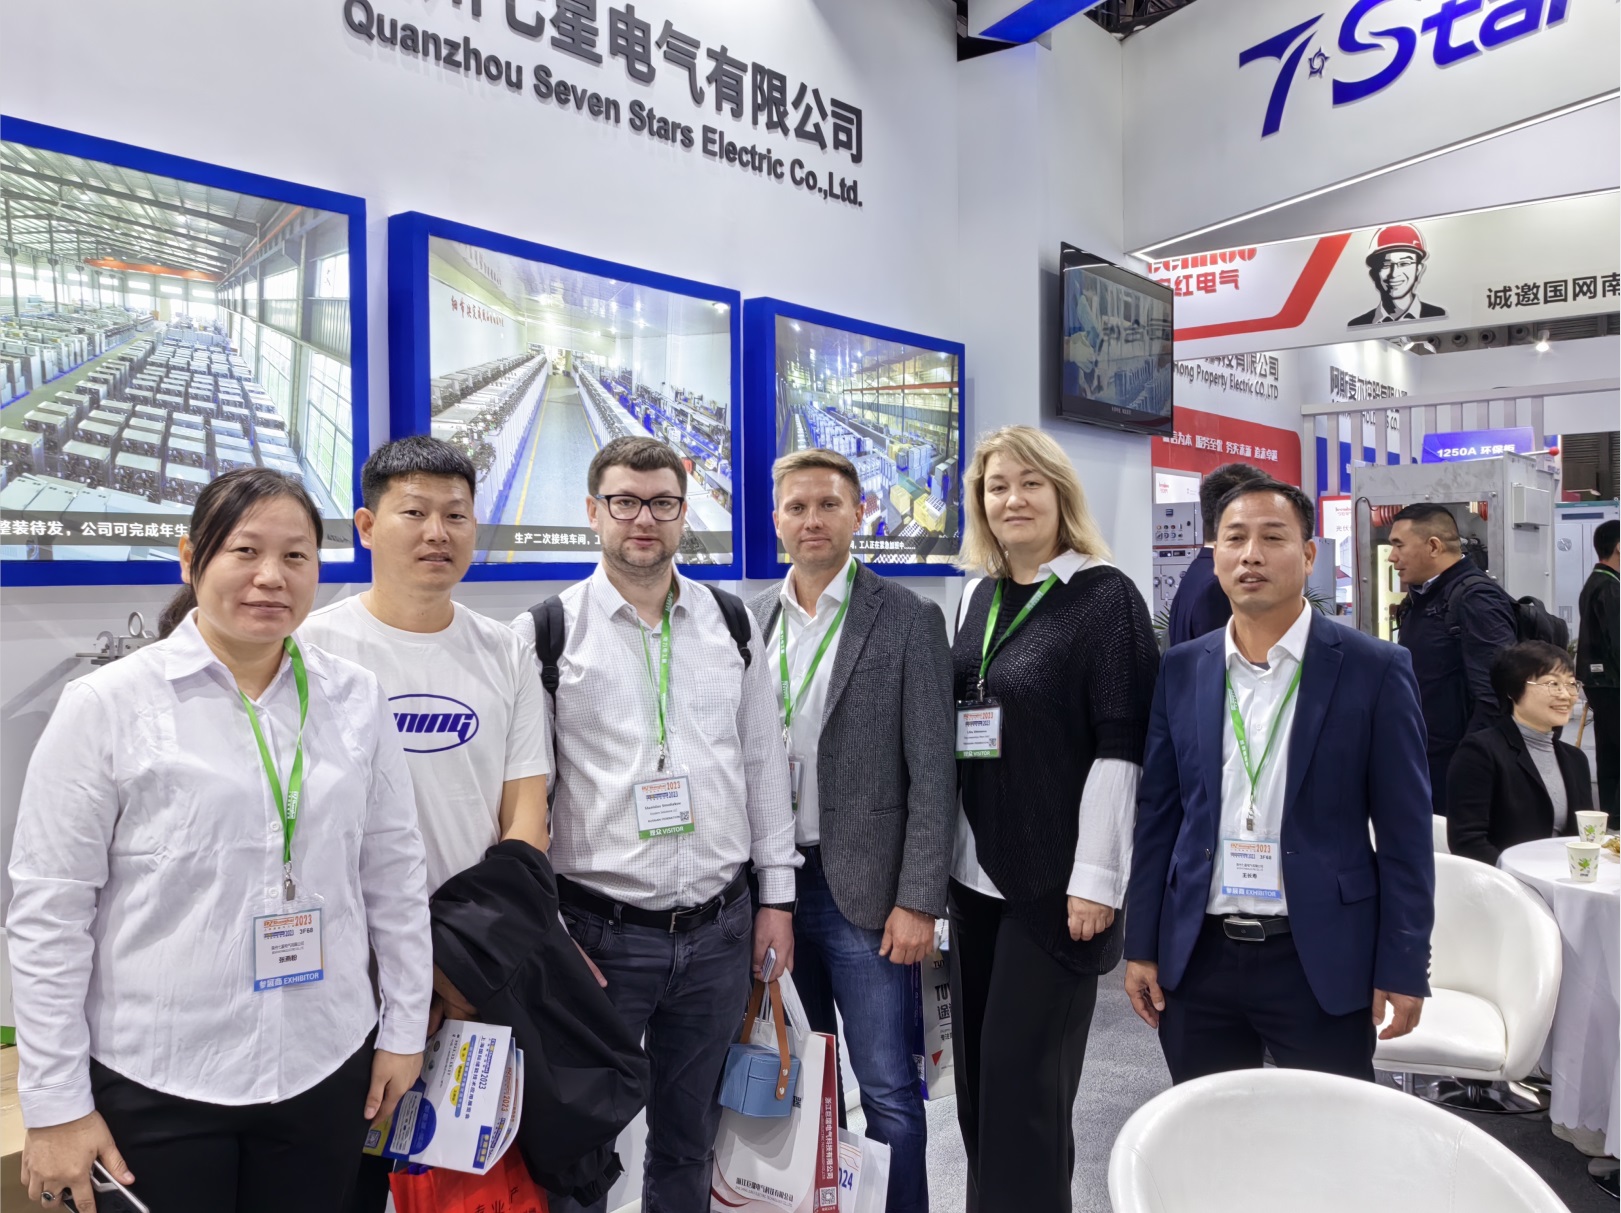 शंघाई में सेवन स्टार इलेक्ट्रिक कंपनी लिमिटेड की ईपी पावर प्रदर्शनी पूरी तरह सफल रही